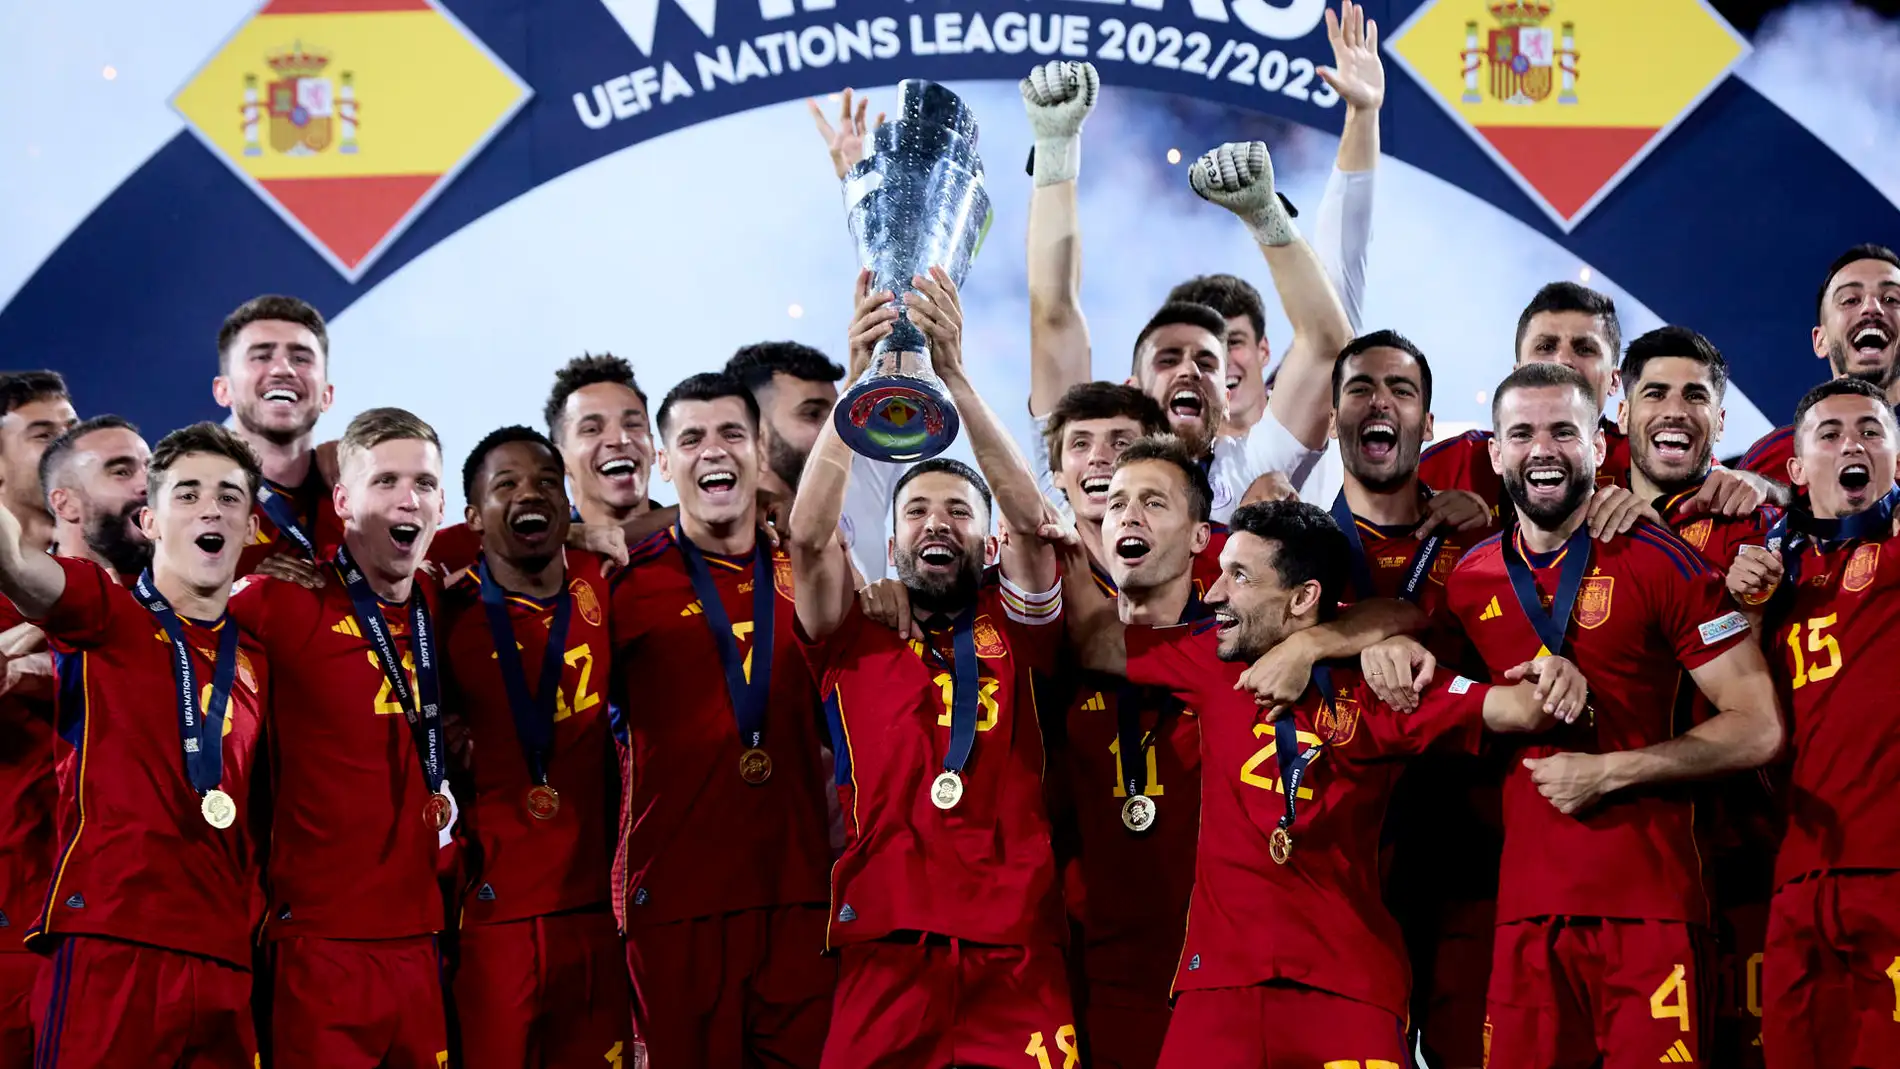 Los jugadores de la selección española de fútbol celebran un título de Nations League.